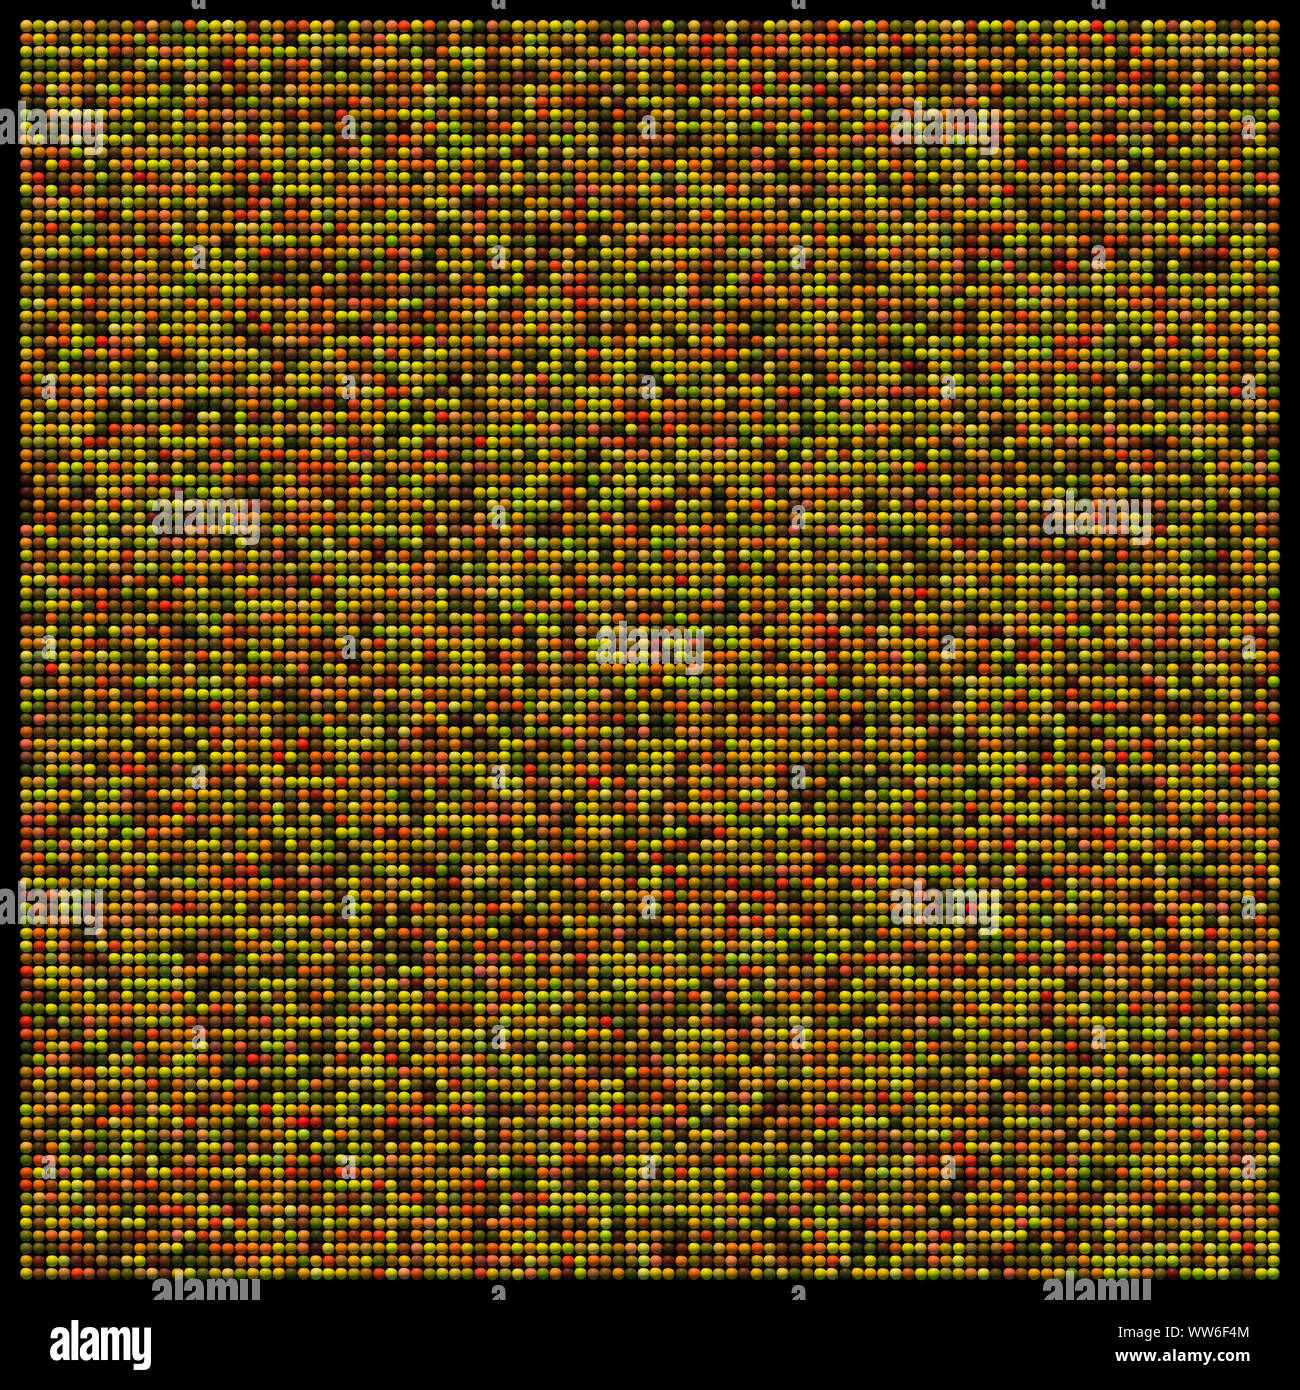 Quadratischen Raster der halbrunde Sphären mit zufälliger Verteilung in der Farbe gelblich, grünlich und rötlichen Tönen Stockfoto